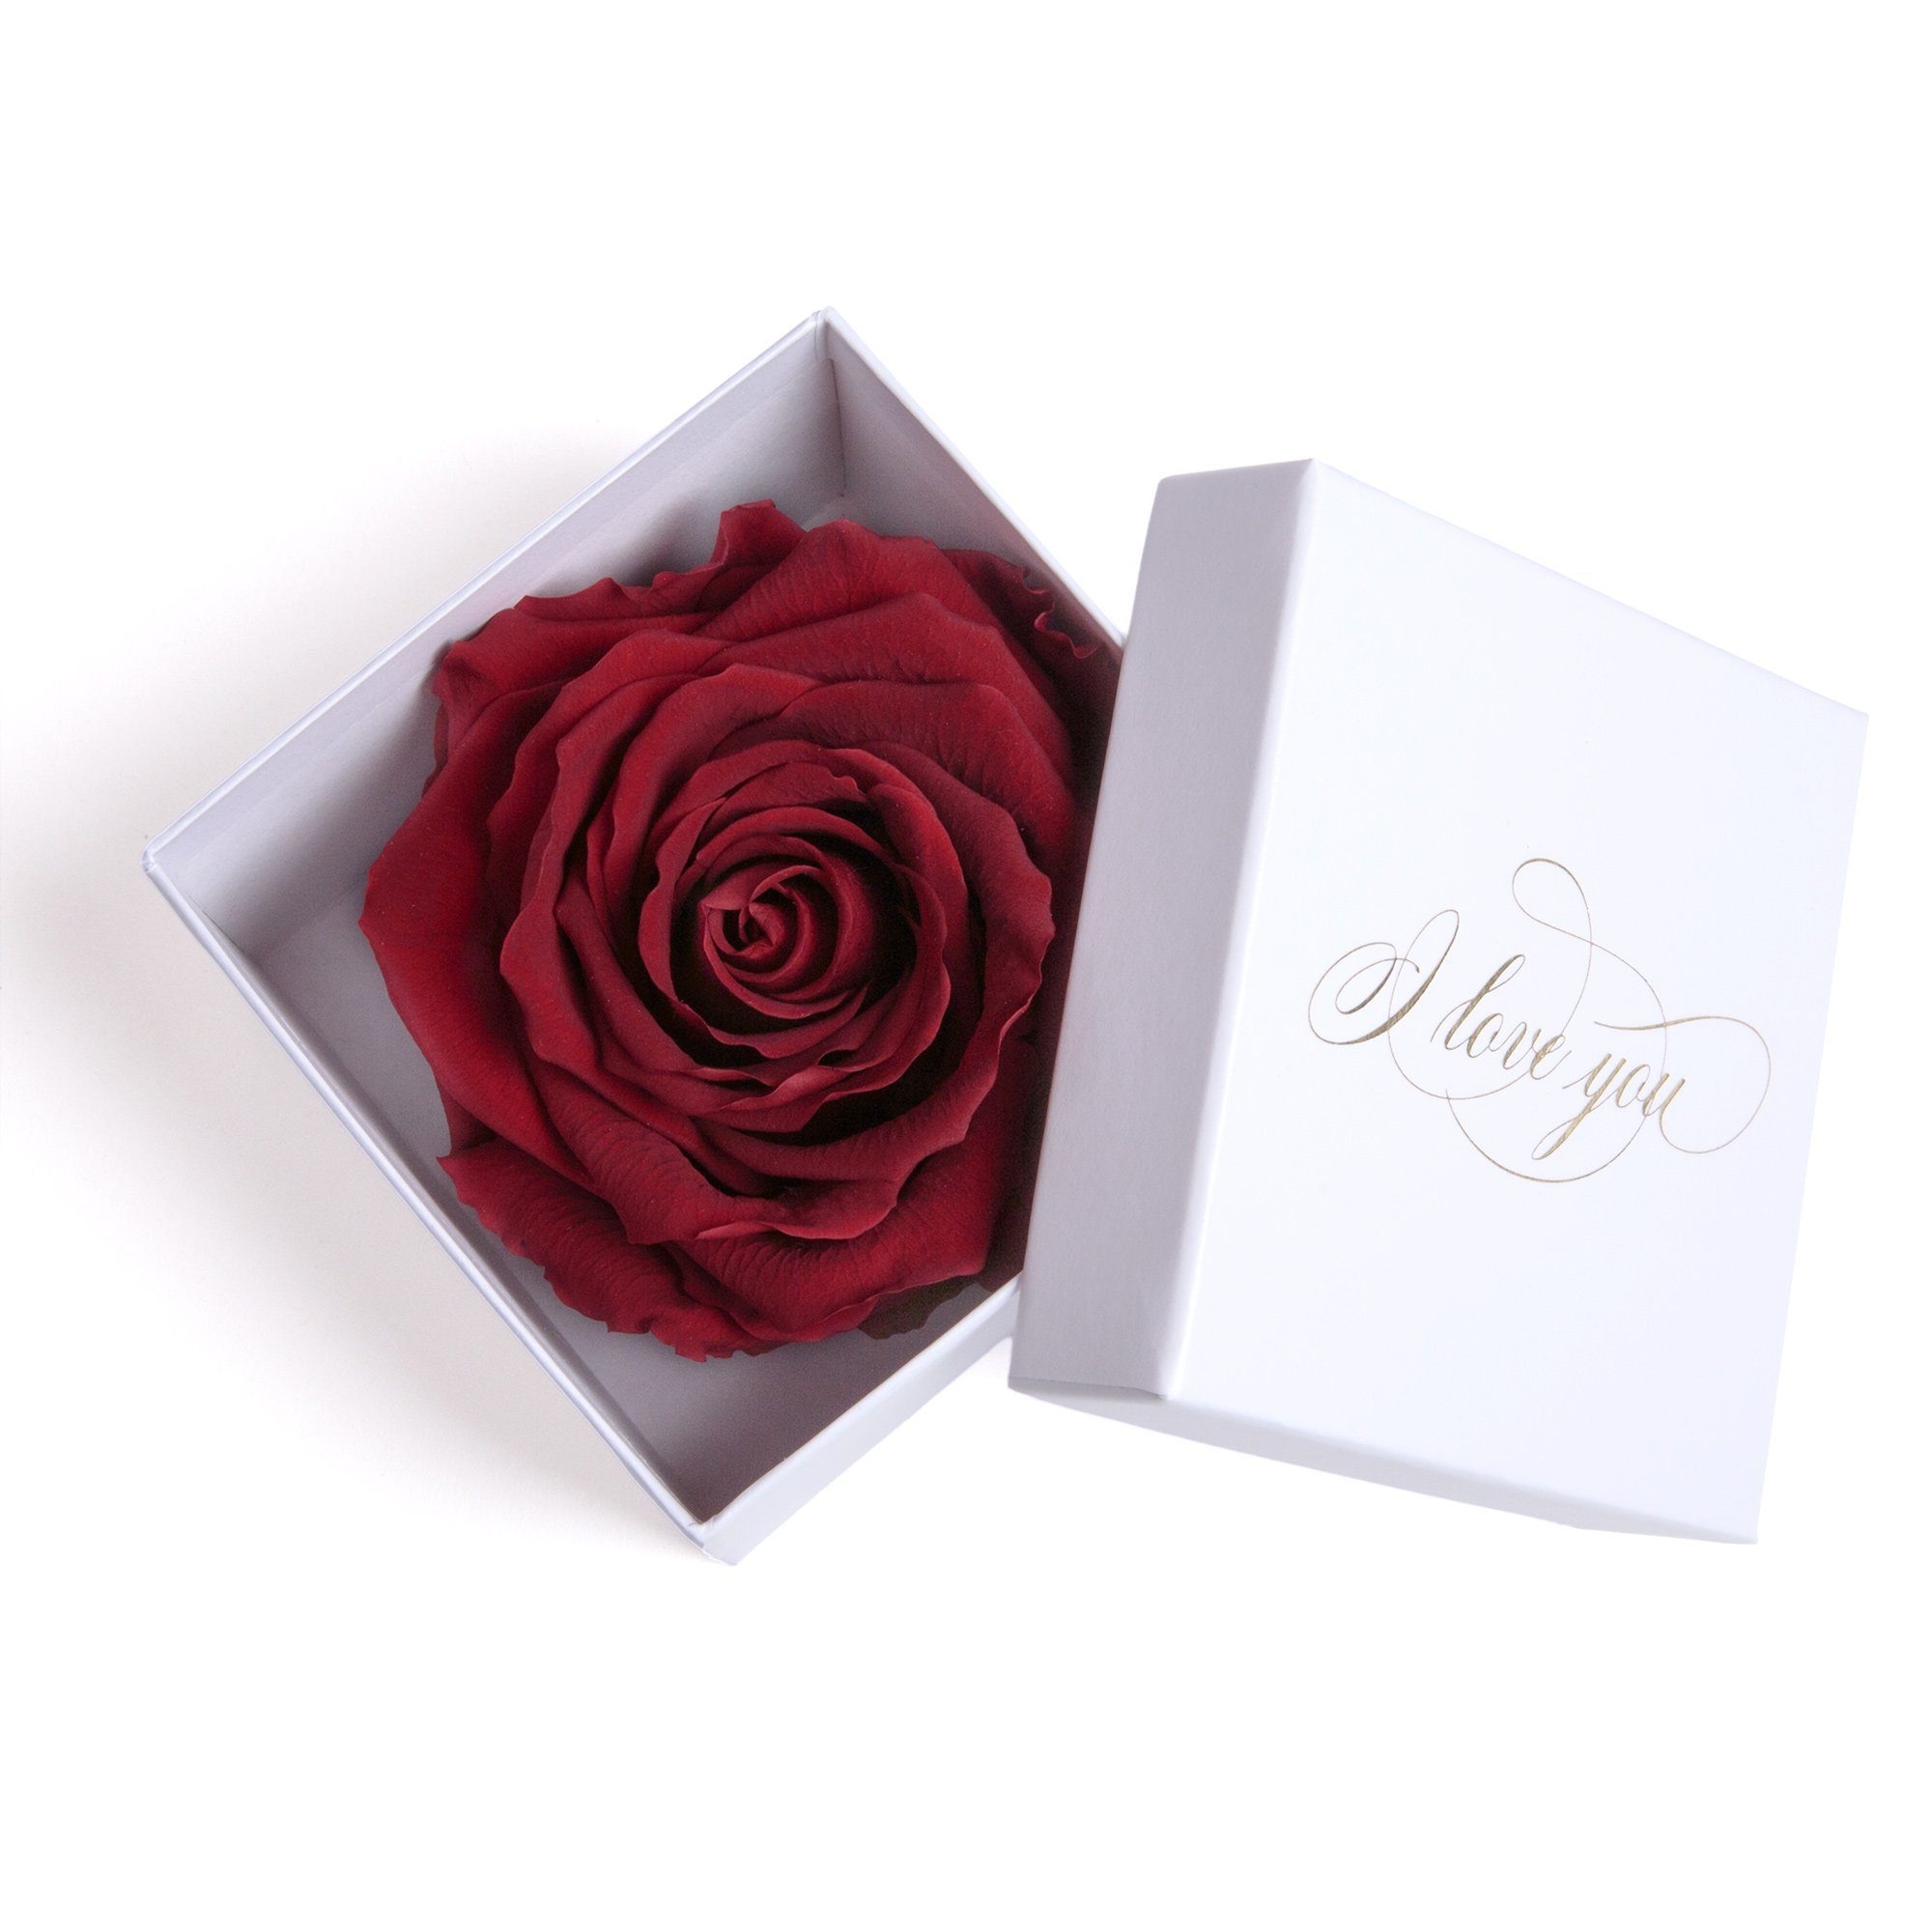 Kunstblume Infinity Rose in Box weiß I LOVE YOU Geschenk Frauen Liebesbeweis Valentinstag Rose, ROSEMARIE SCHULZ Heidelberg, Höhe 6 cm, Rose haltbar bis zu 3 Jahre burgundy